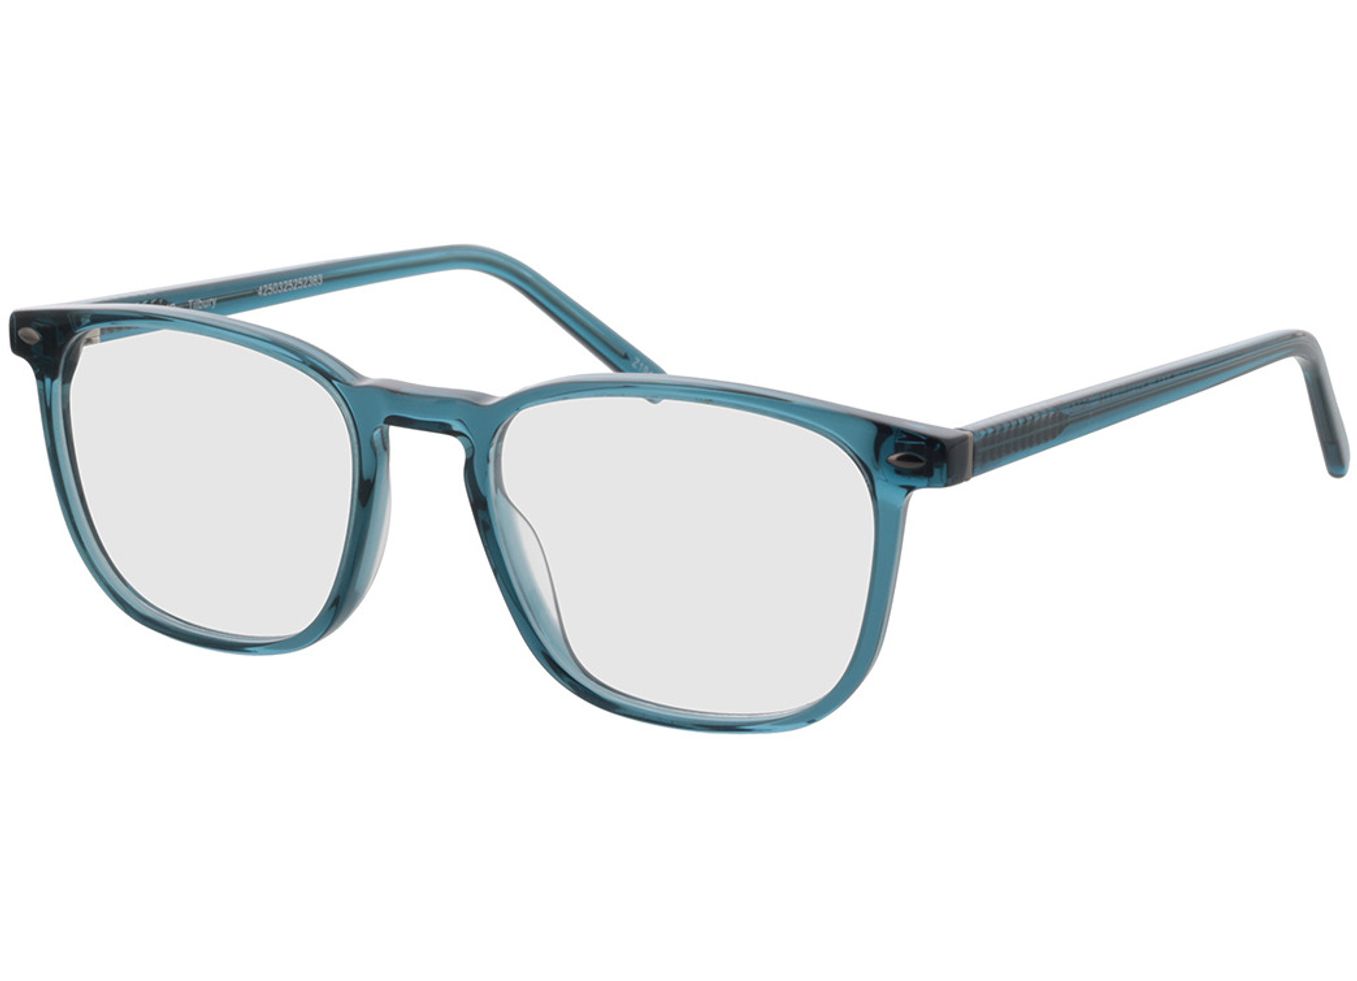 Tilbury - blau Brillengestell inkl. Gläser, Vollrand, Eckig von Brille24 Collection